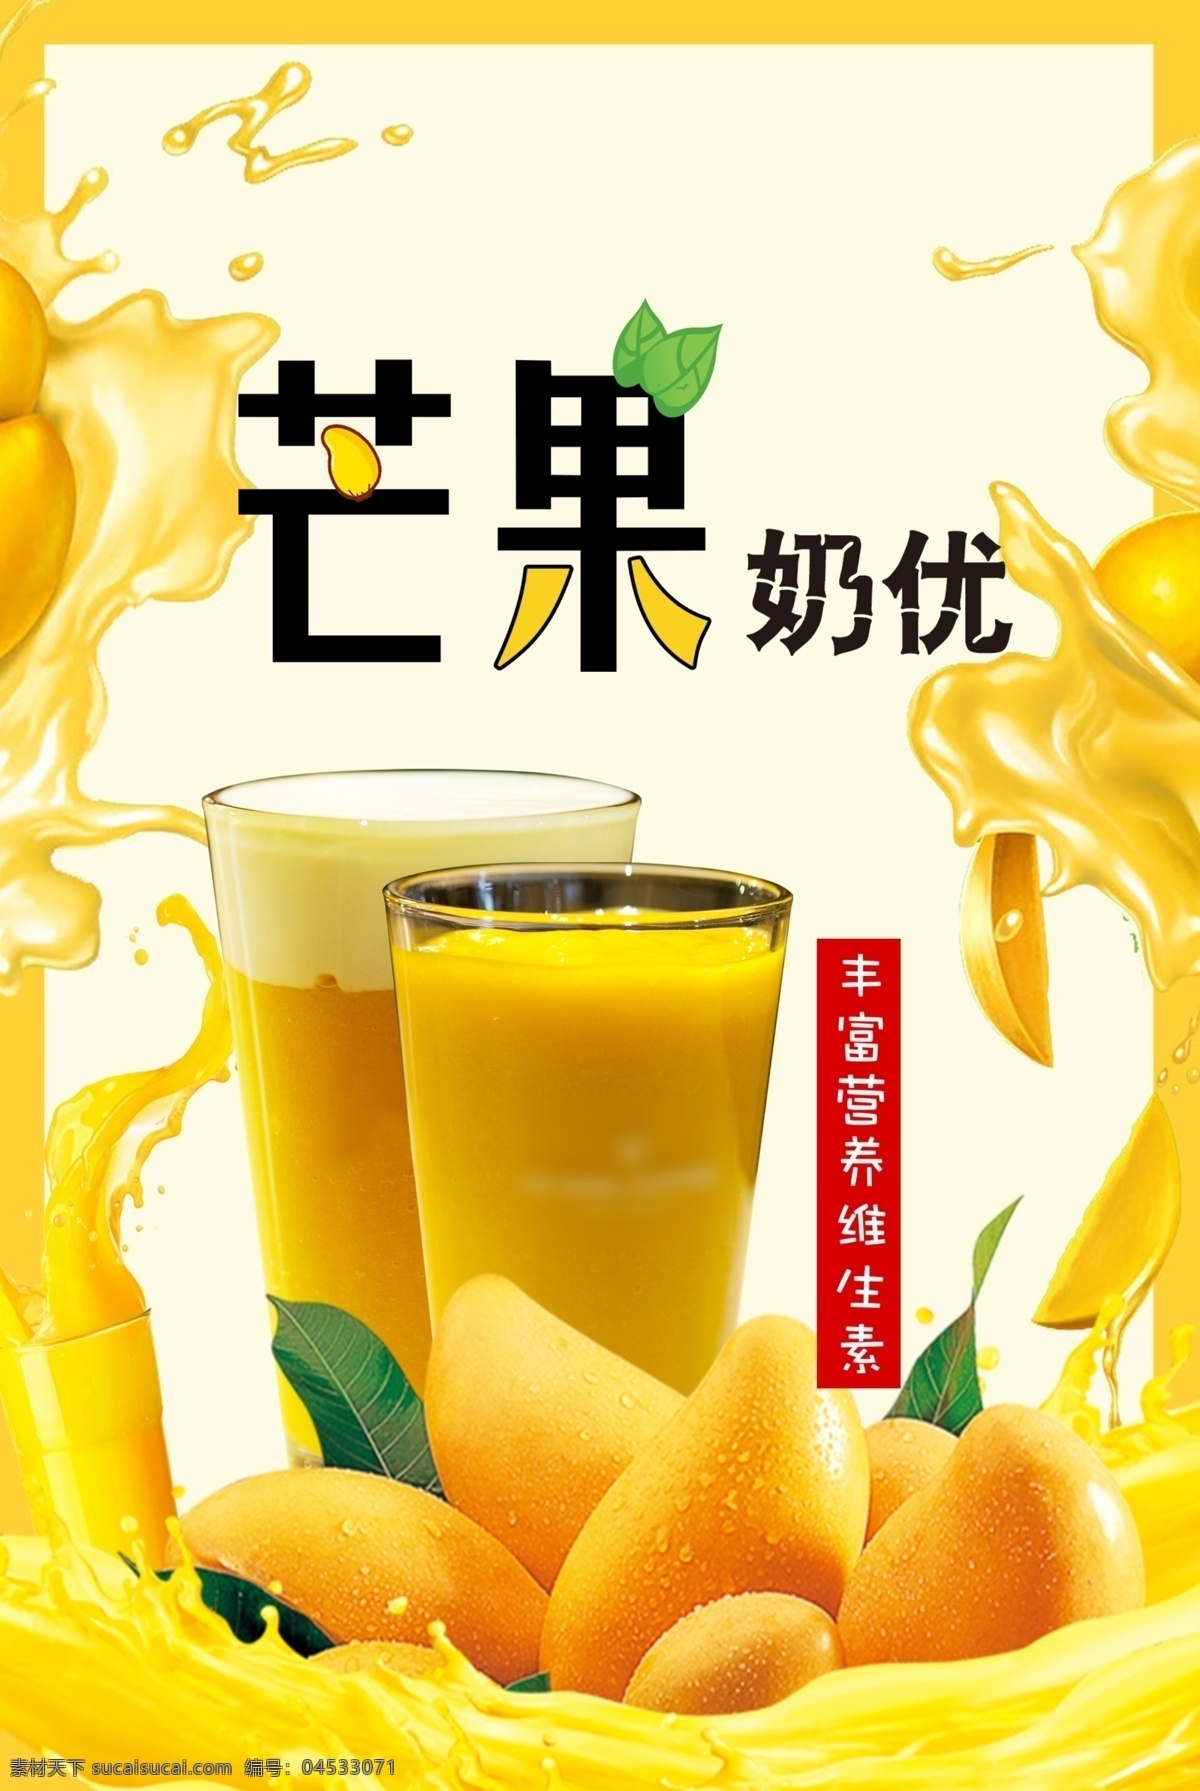 芒果奶优 芒果海报 芒果饮品 热饮 芒果汁 芒果